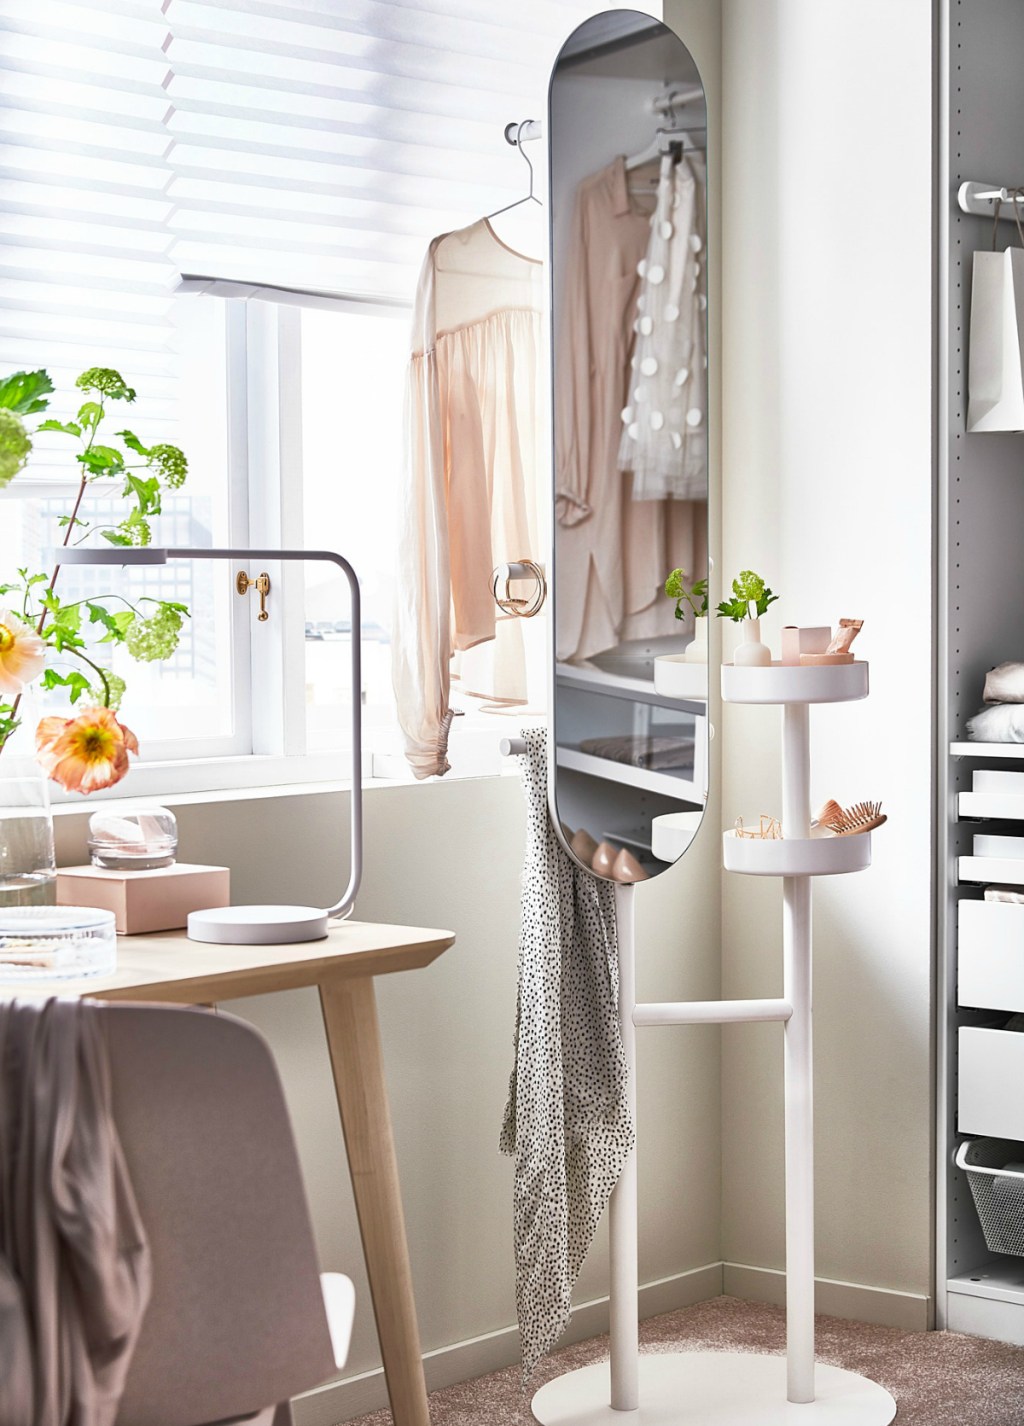 IKEA LIERSKOGEN Valet Stand with Mirror in bedroom